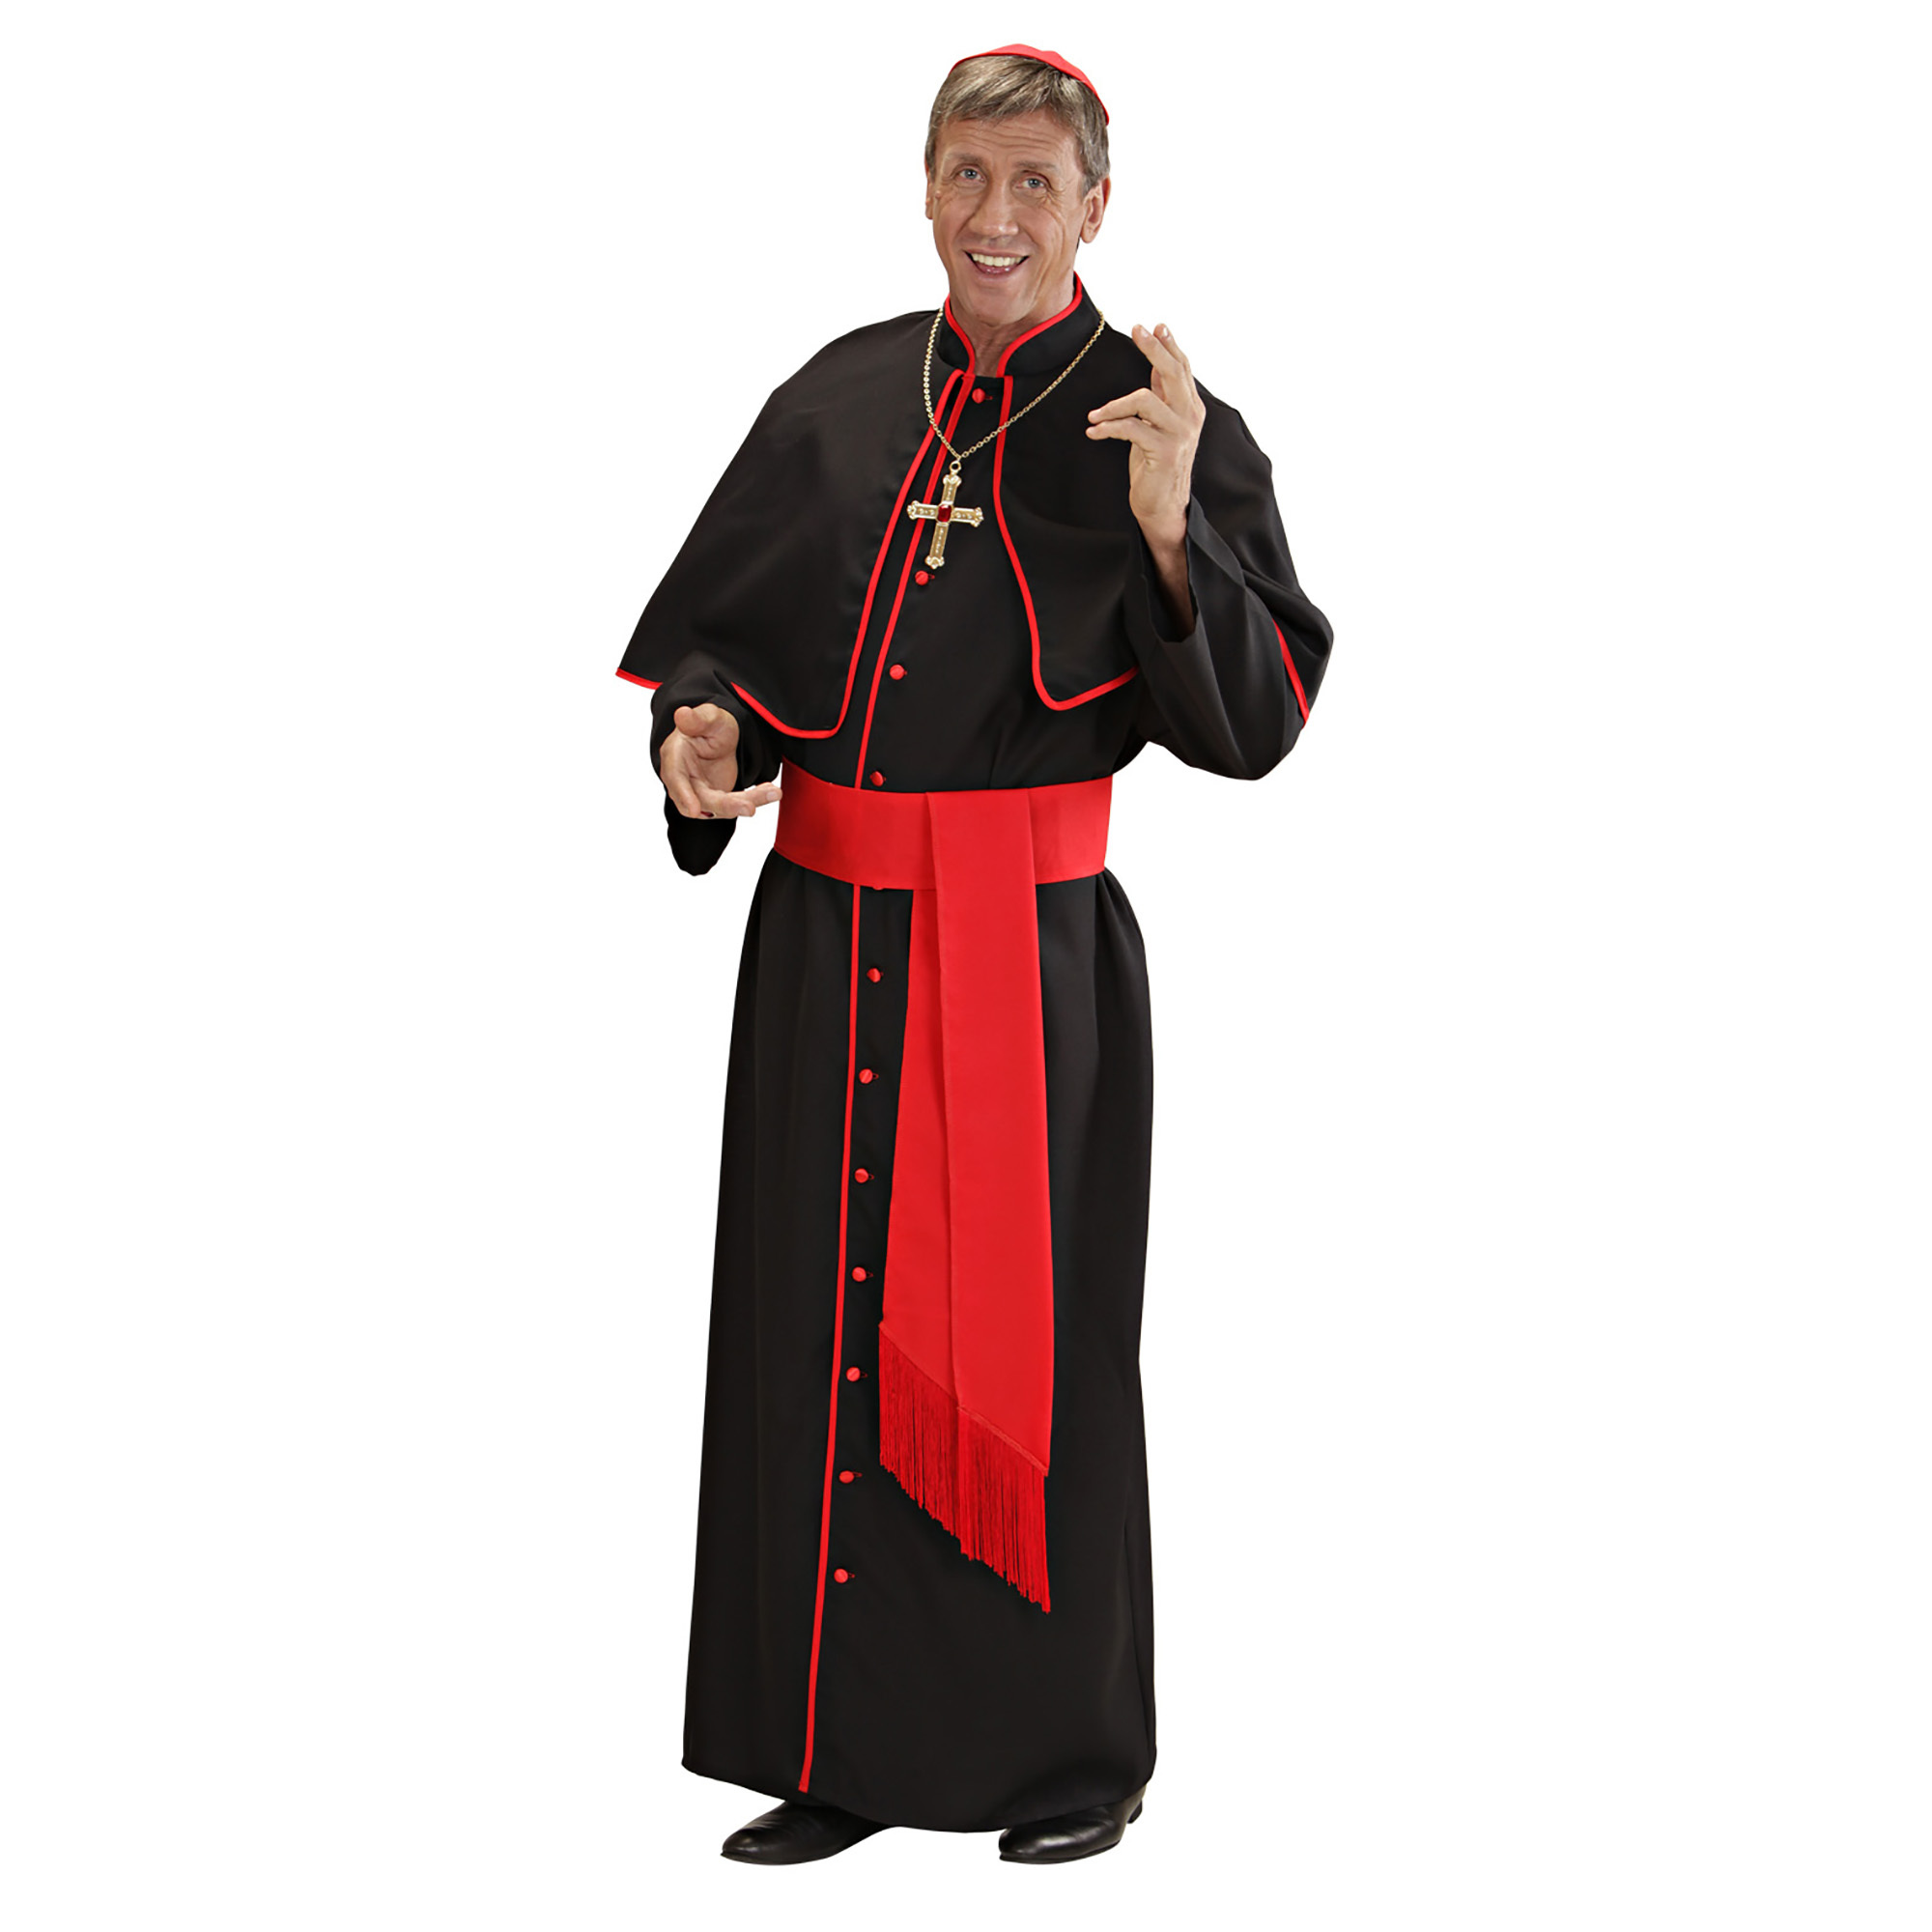 katholieke kardinaal religieus kostuum